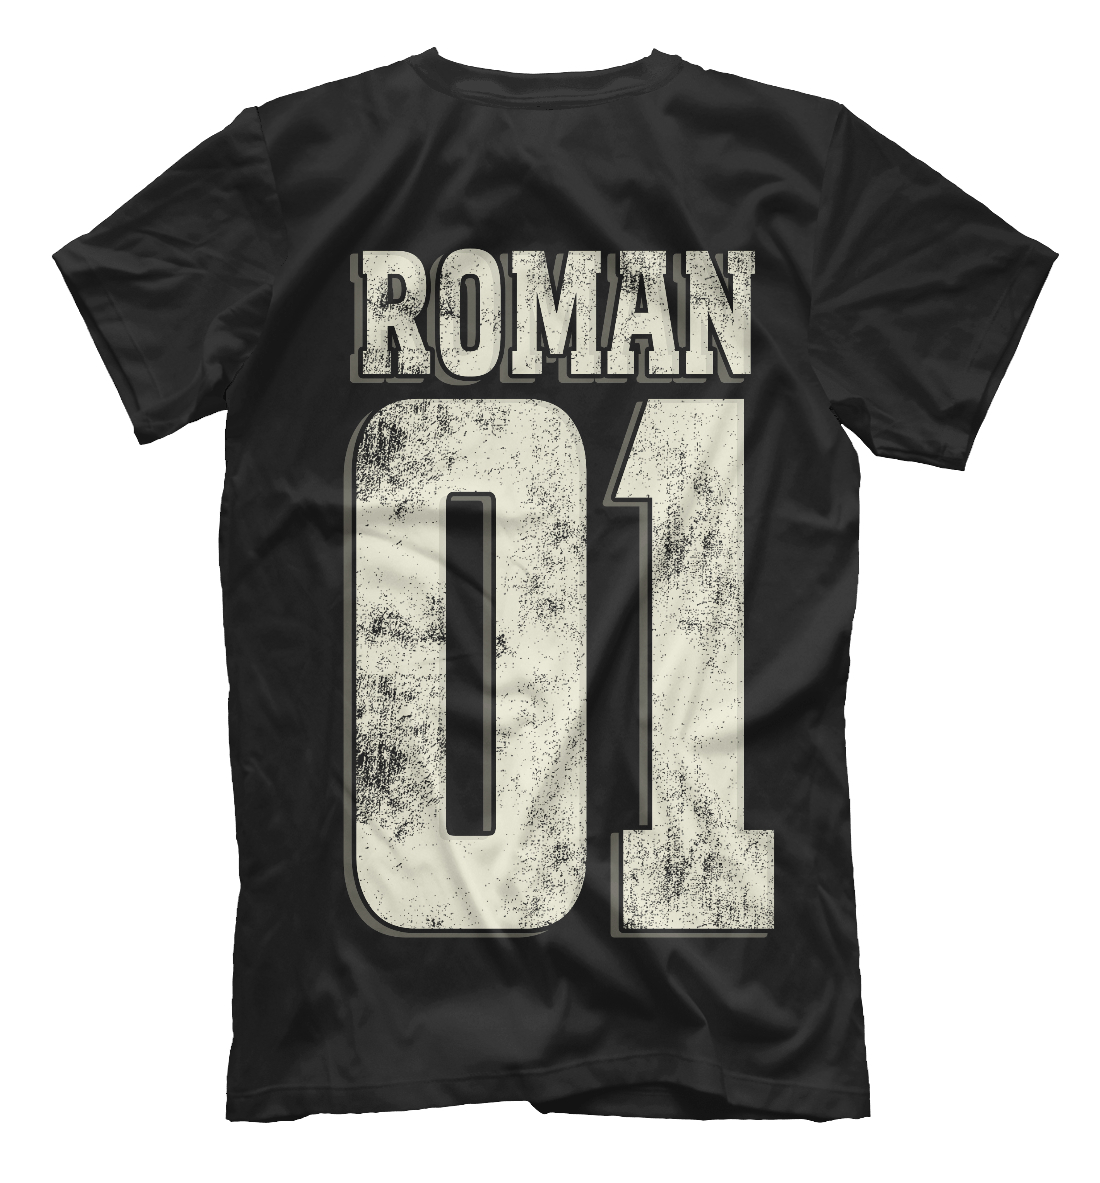 Мужская футболка с принтом Роман 01  - фото 2-спина